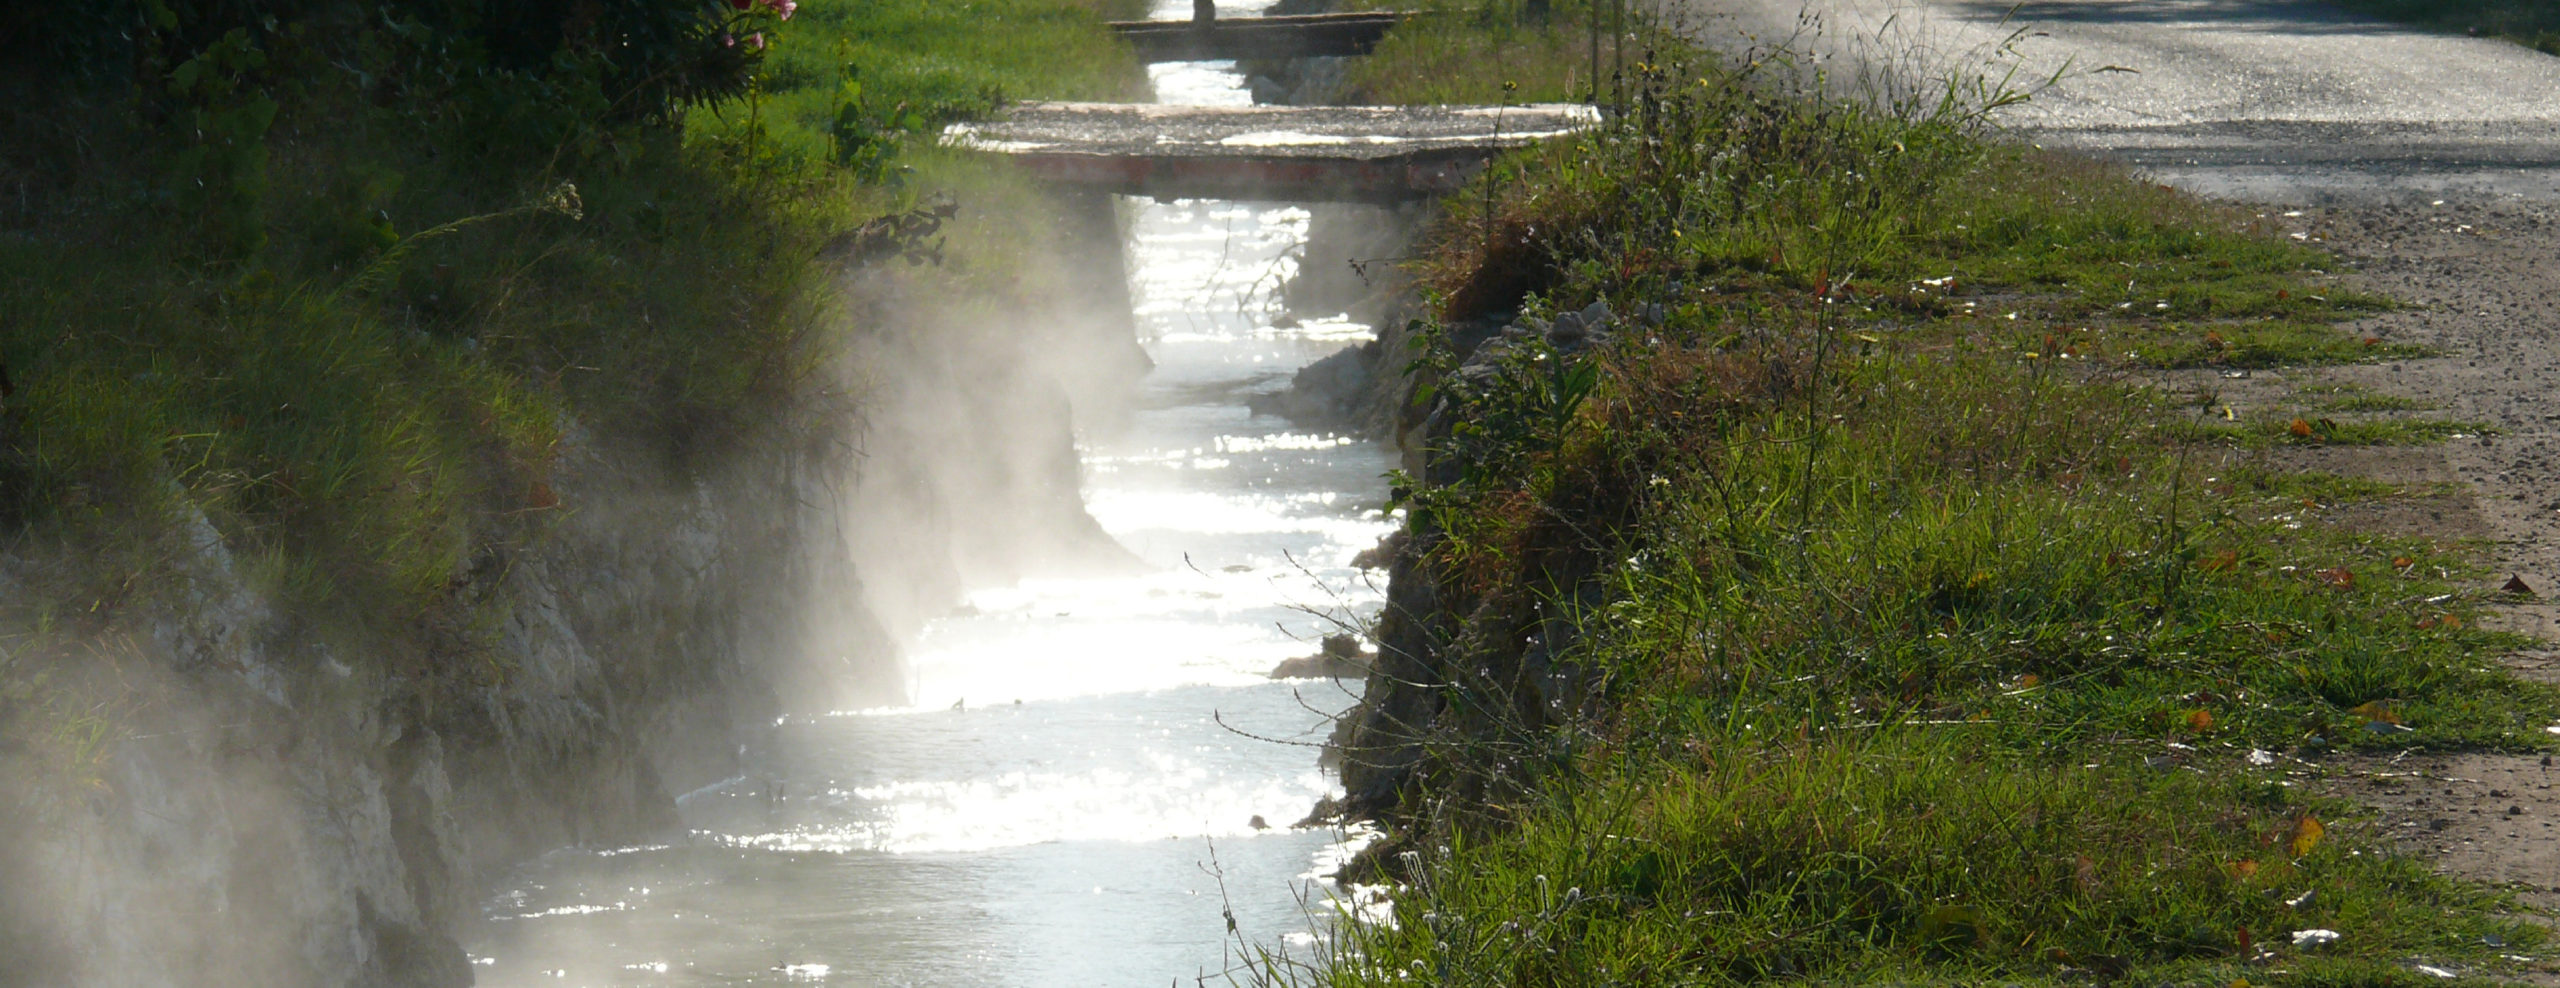 Viterbo - uno dei canali di scolo provenienti dalle pozze di acqua termale